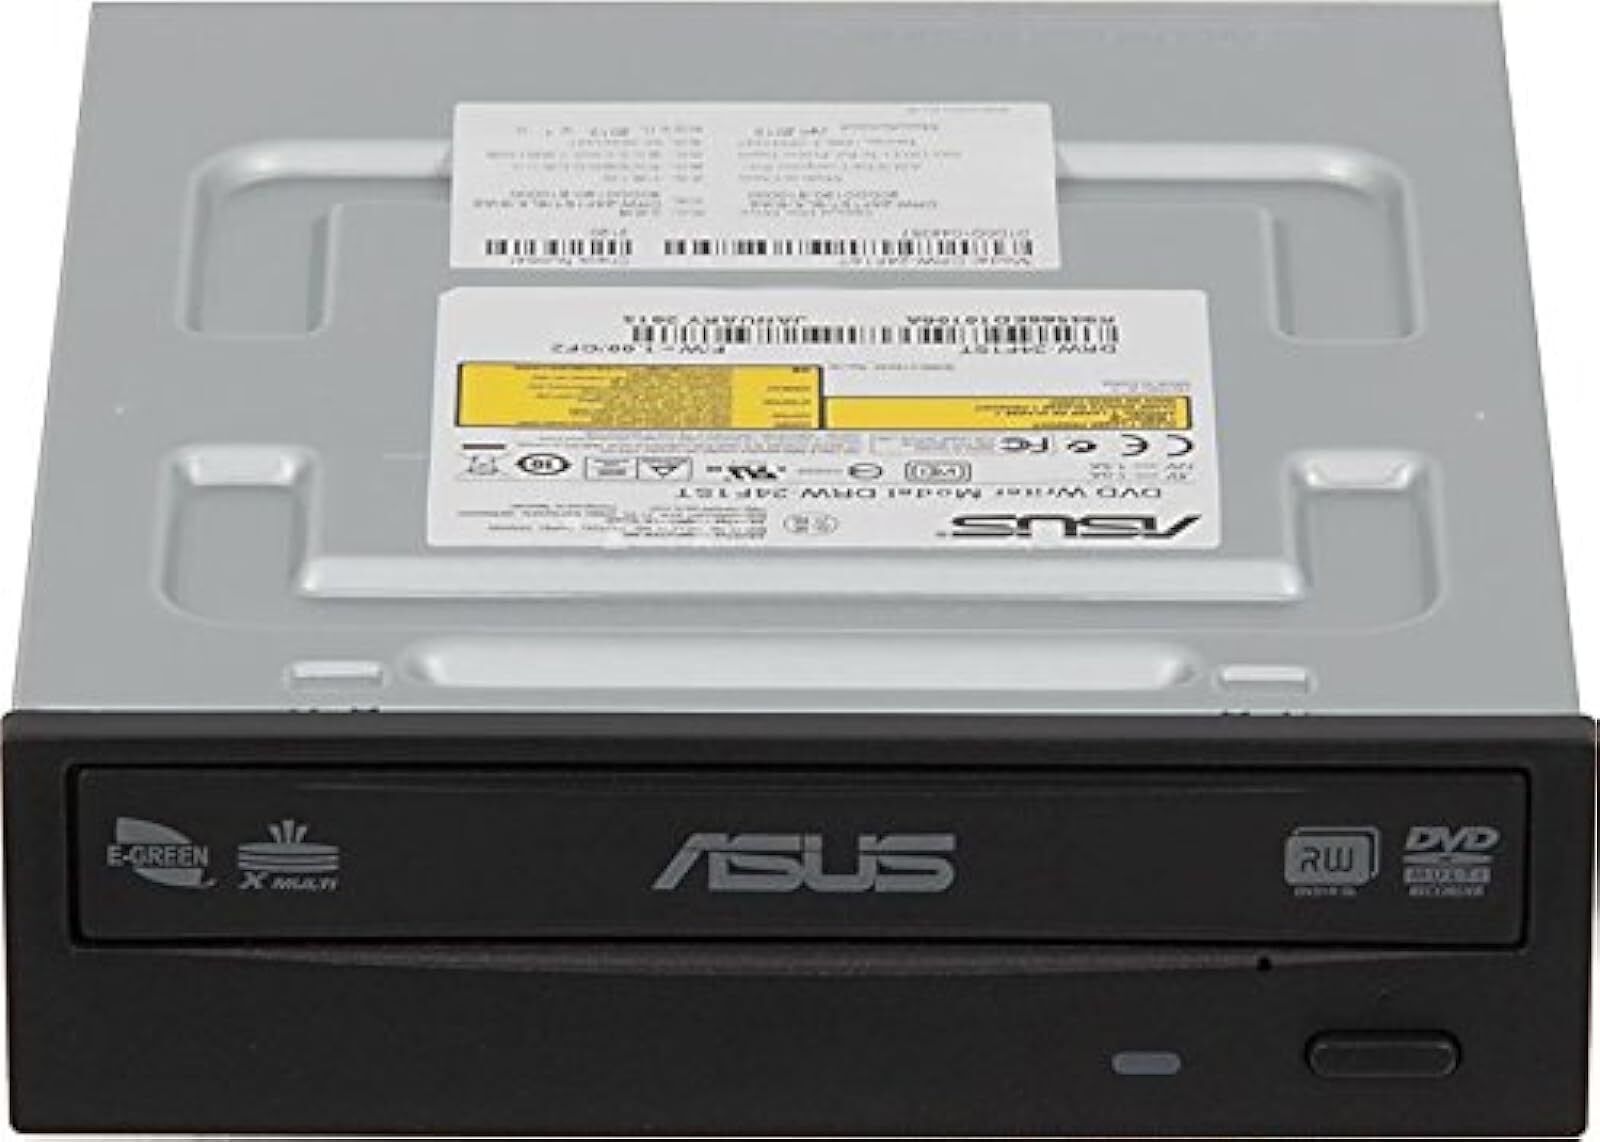 ASUS DRW-24F1ST DVD SATA Supermulti Burner Serial ATA Black OEM Bulk